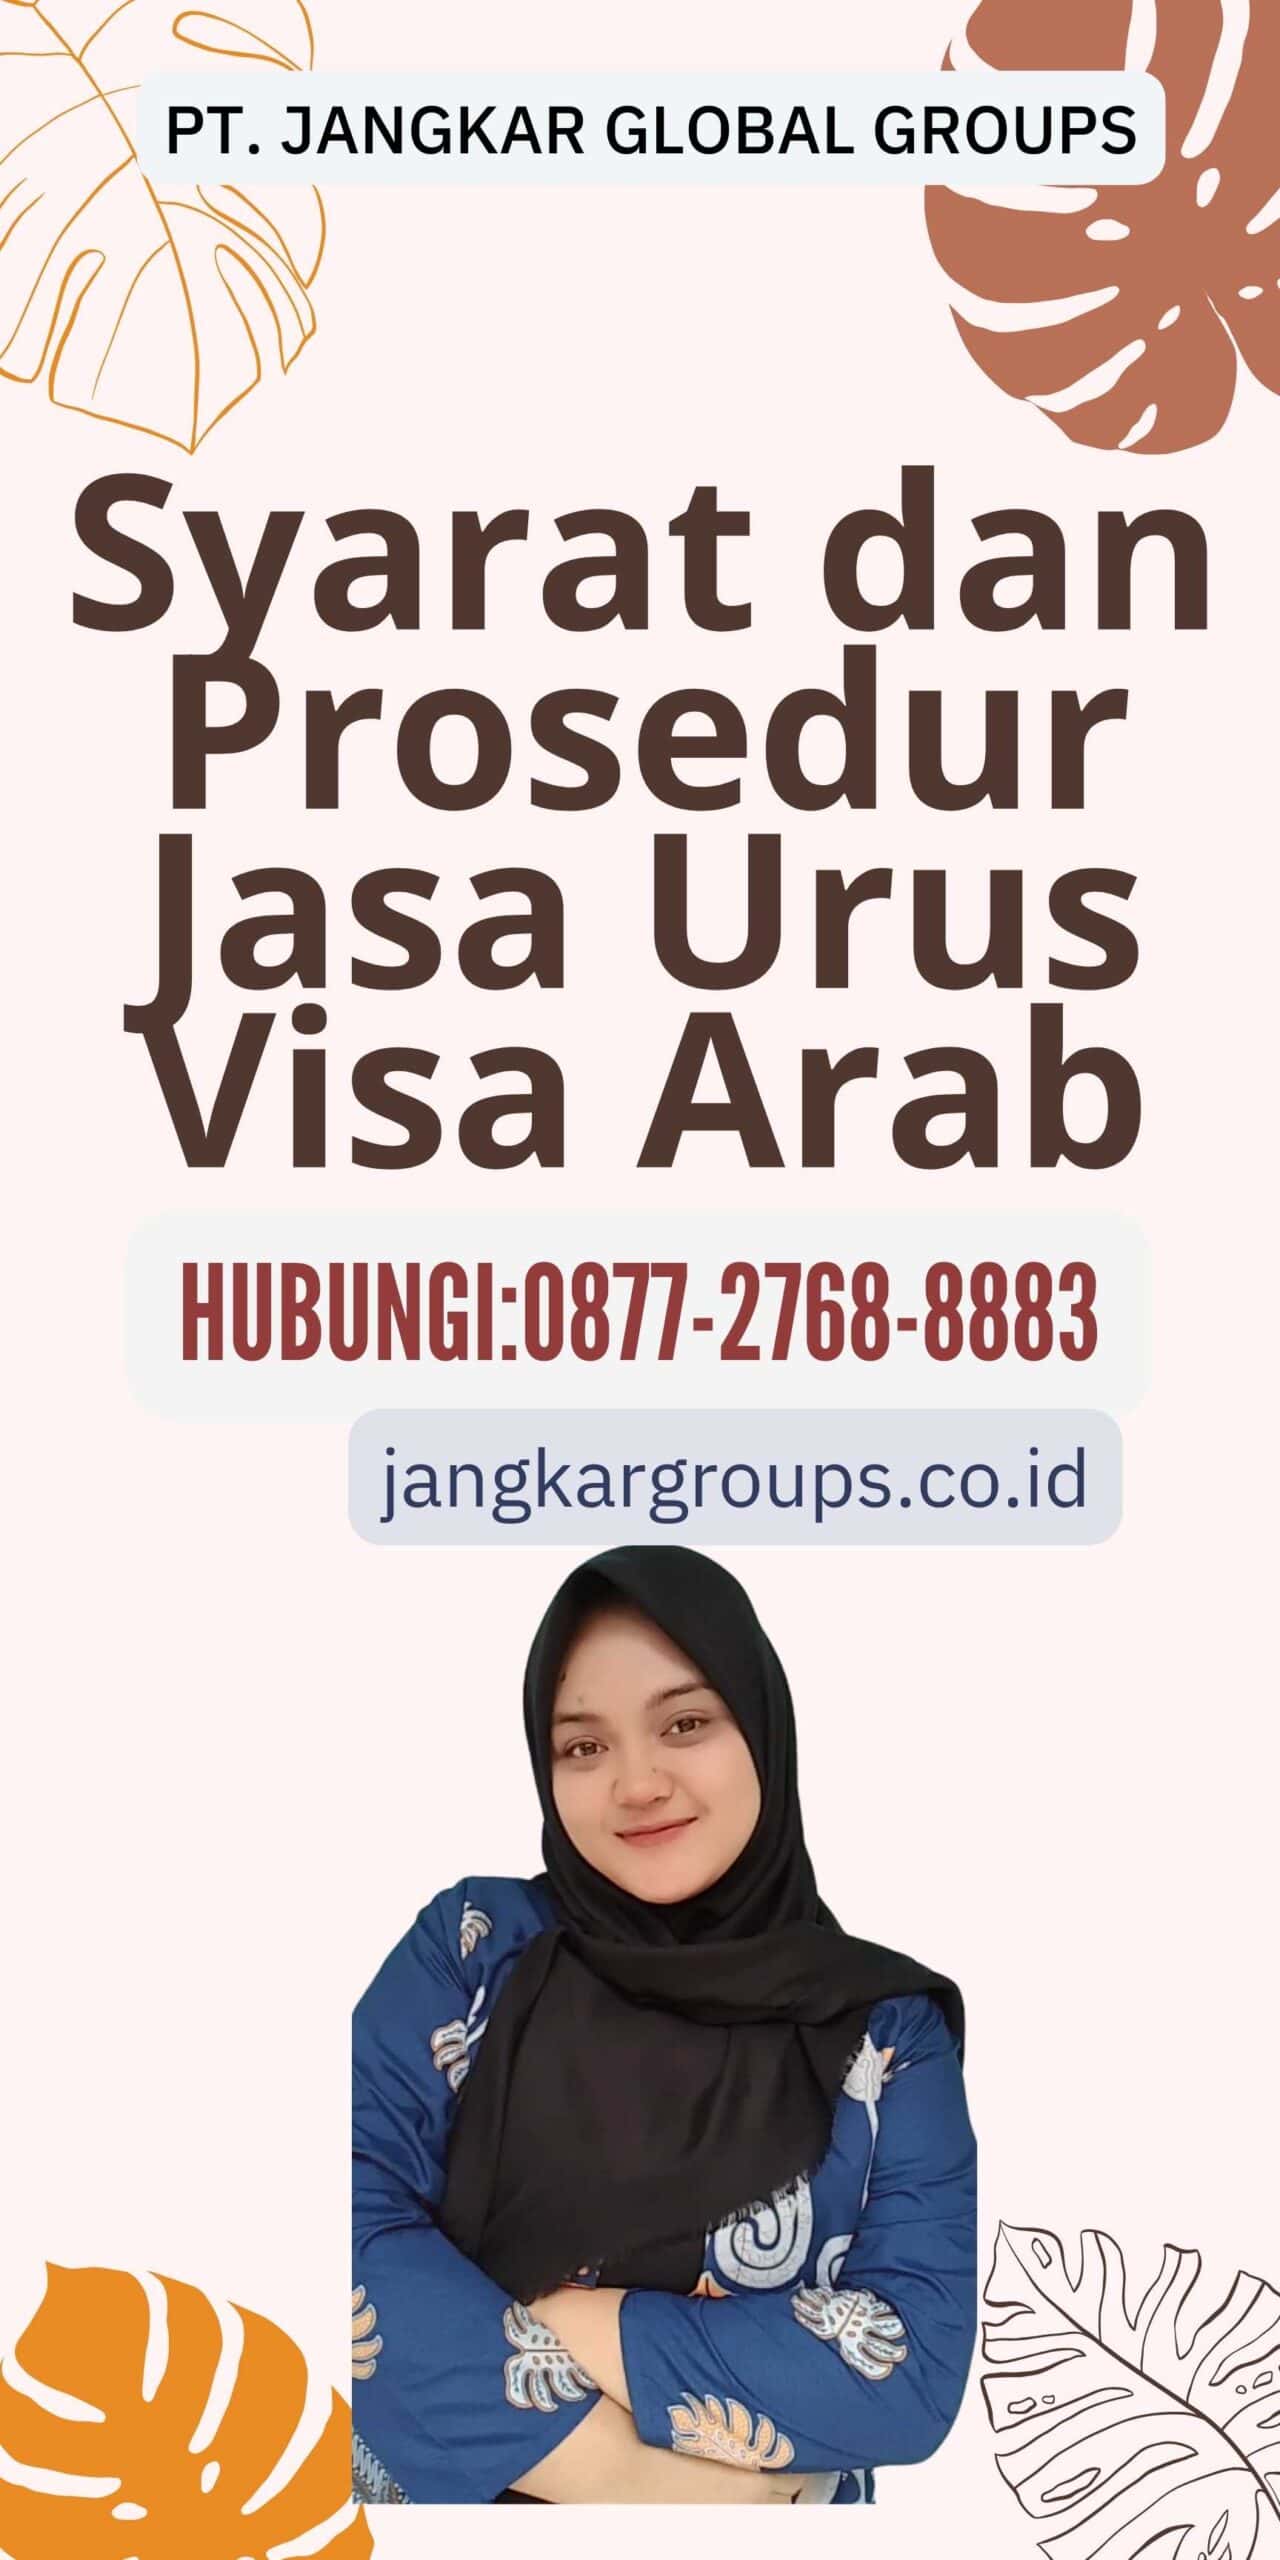 Syarat dan Prosedur Jasa Urus Visa Arab